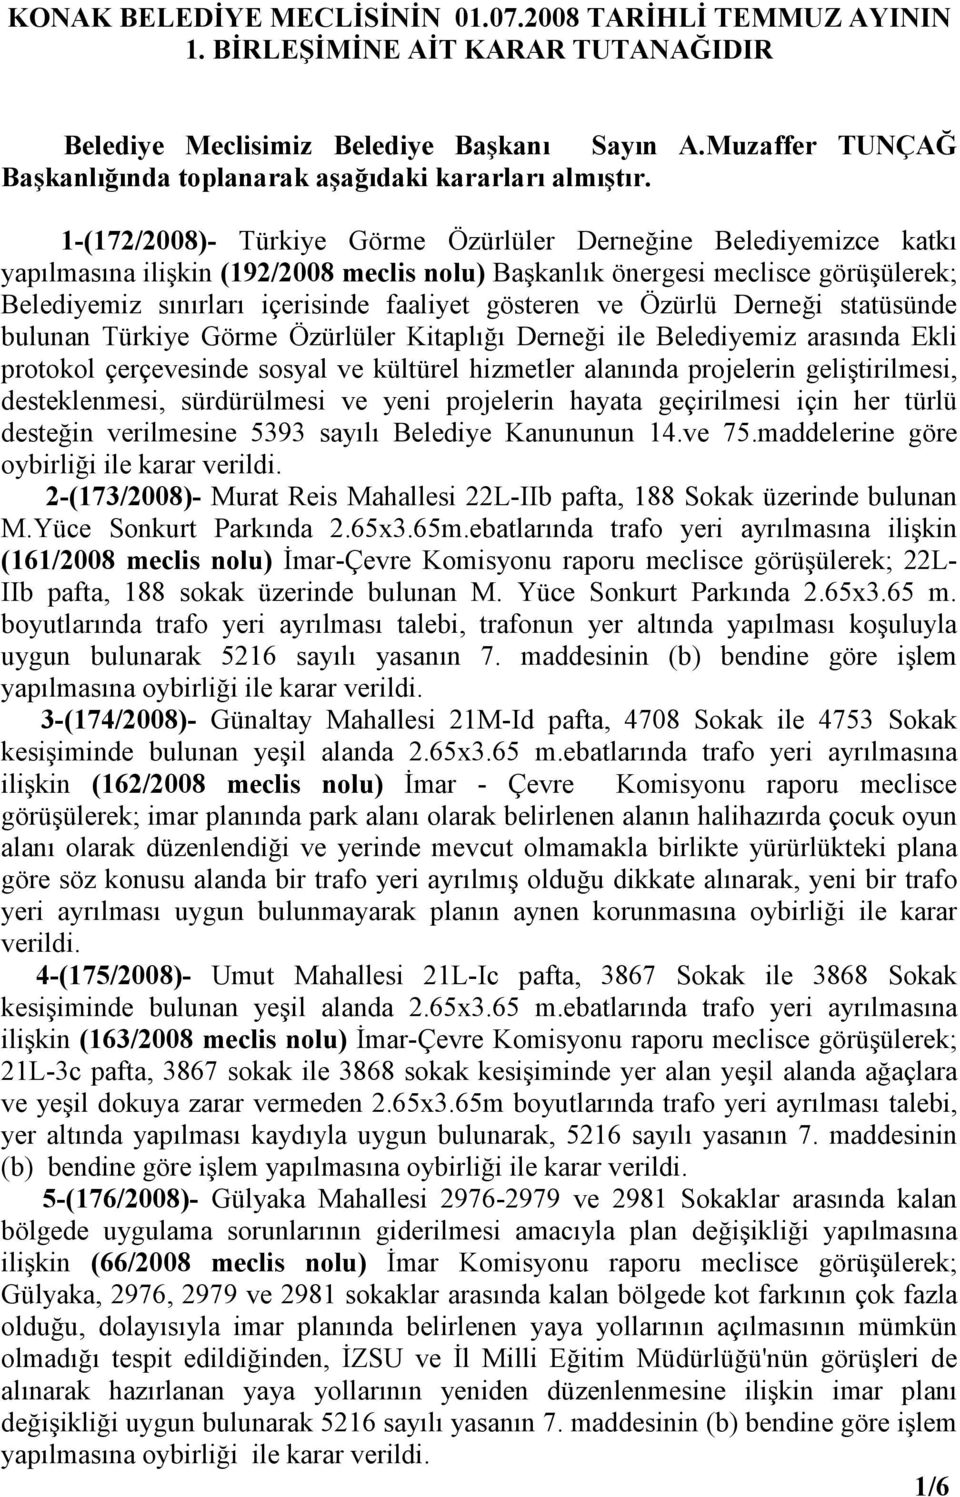 1-(172/2008)- Türkiye Görme Özürlüler Derneğine Belediyemizce katkı yapılmasına ilişkin (192/2008 meclis nolu) Başkanlık önergesi meclisce görüşülerek; Belediyemiz sınırları içerisinde faaliyet